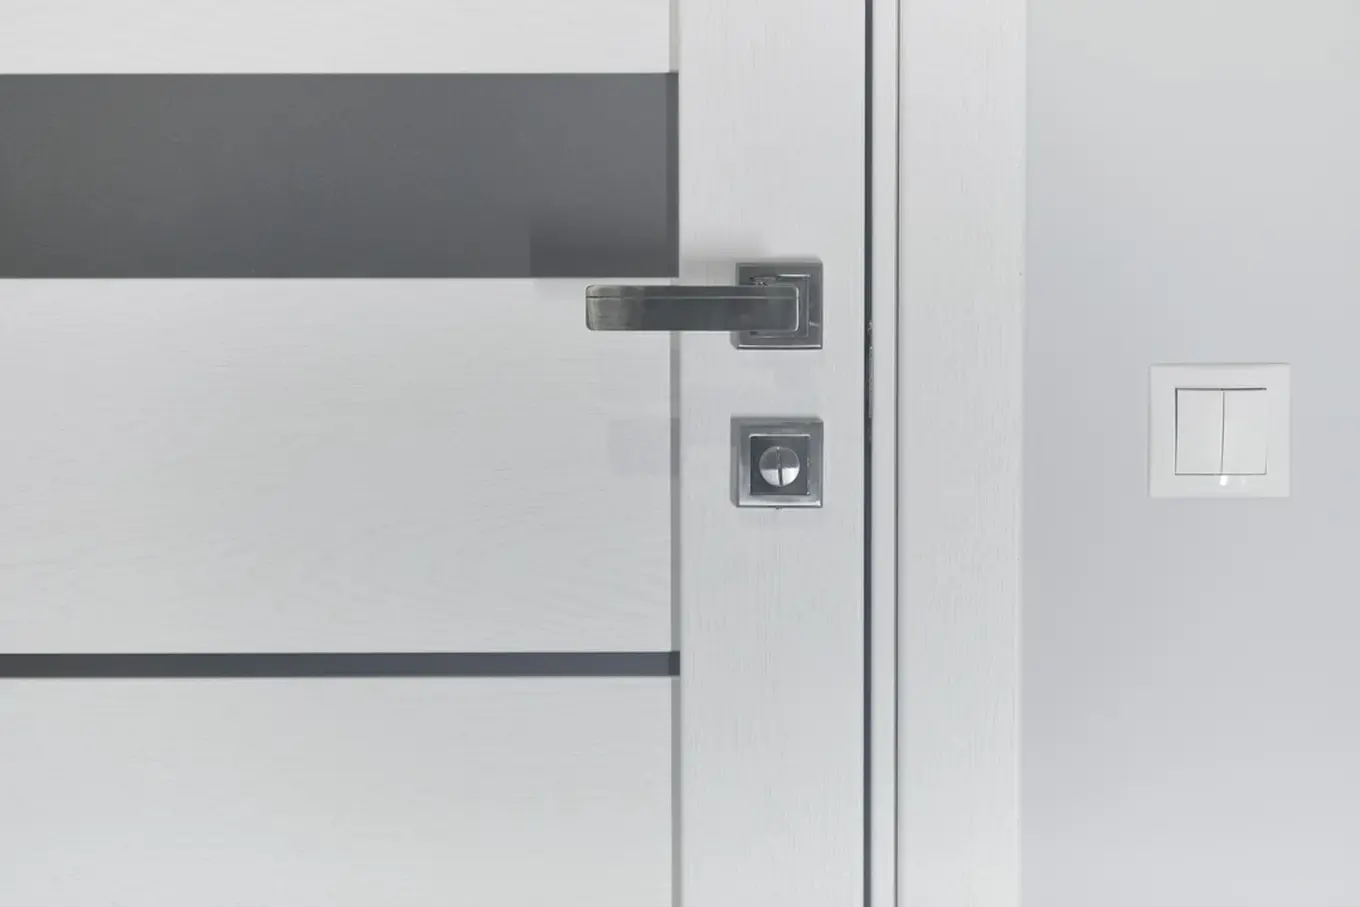 białe drzwi ze srebrną klamką